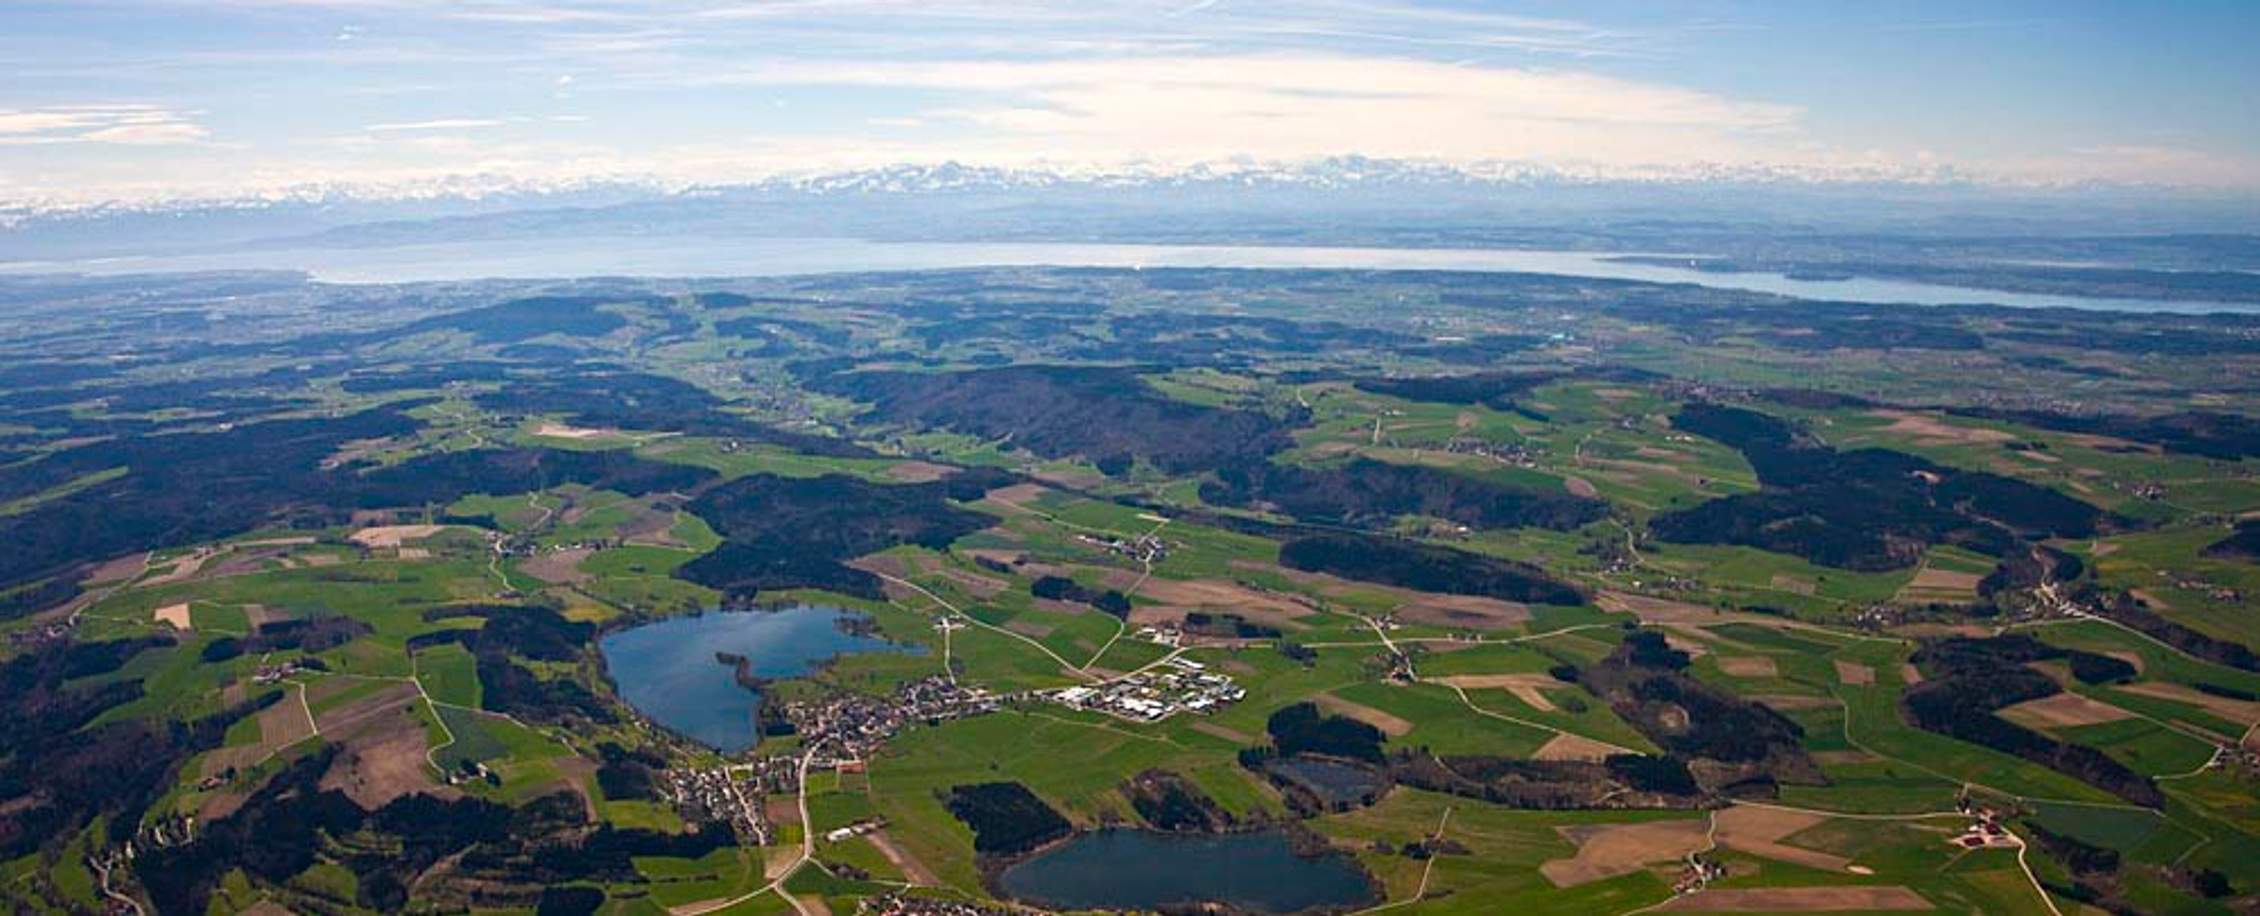 Ferienregion Nördlicher Bodensee – Aktivurlaub in Süddeutschland